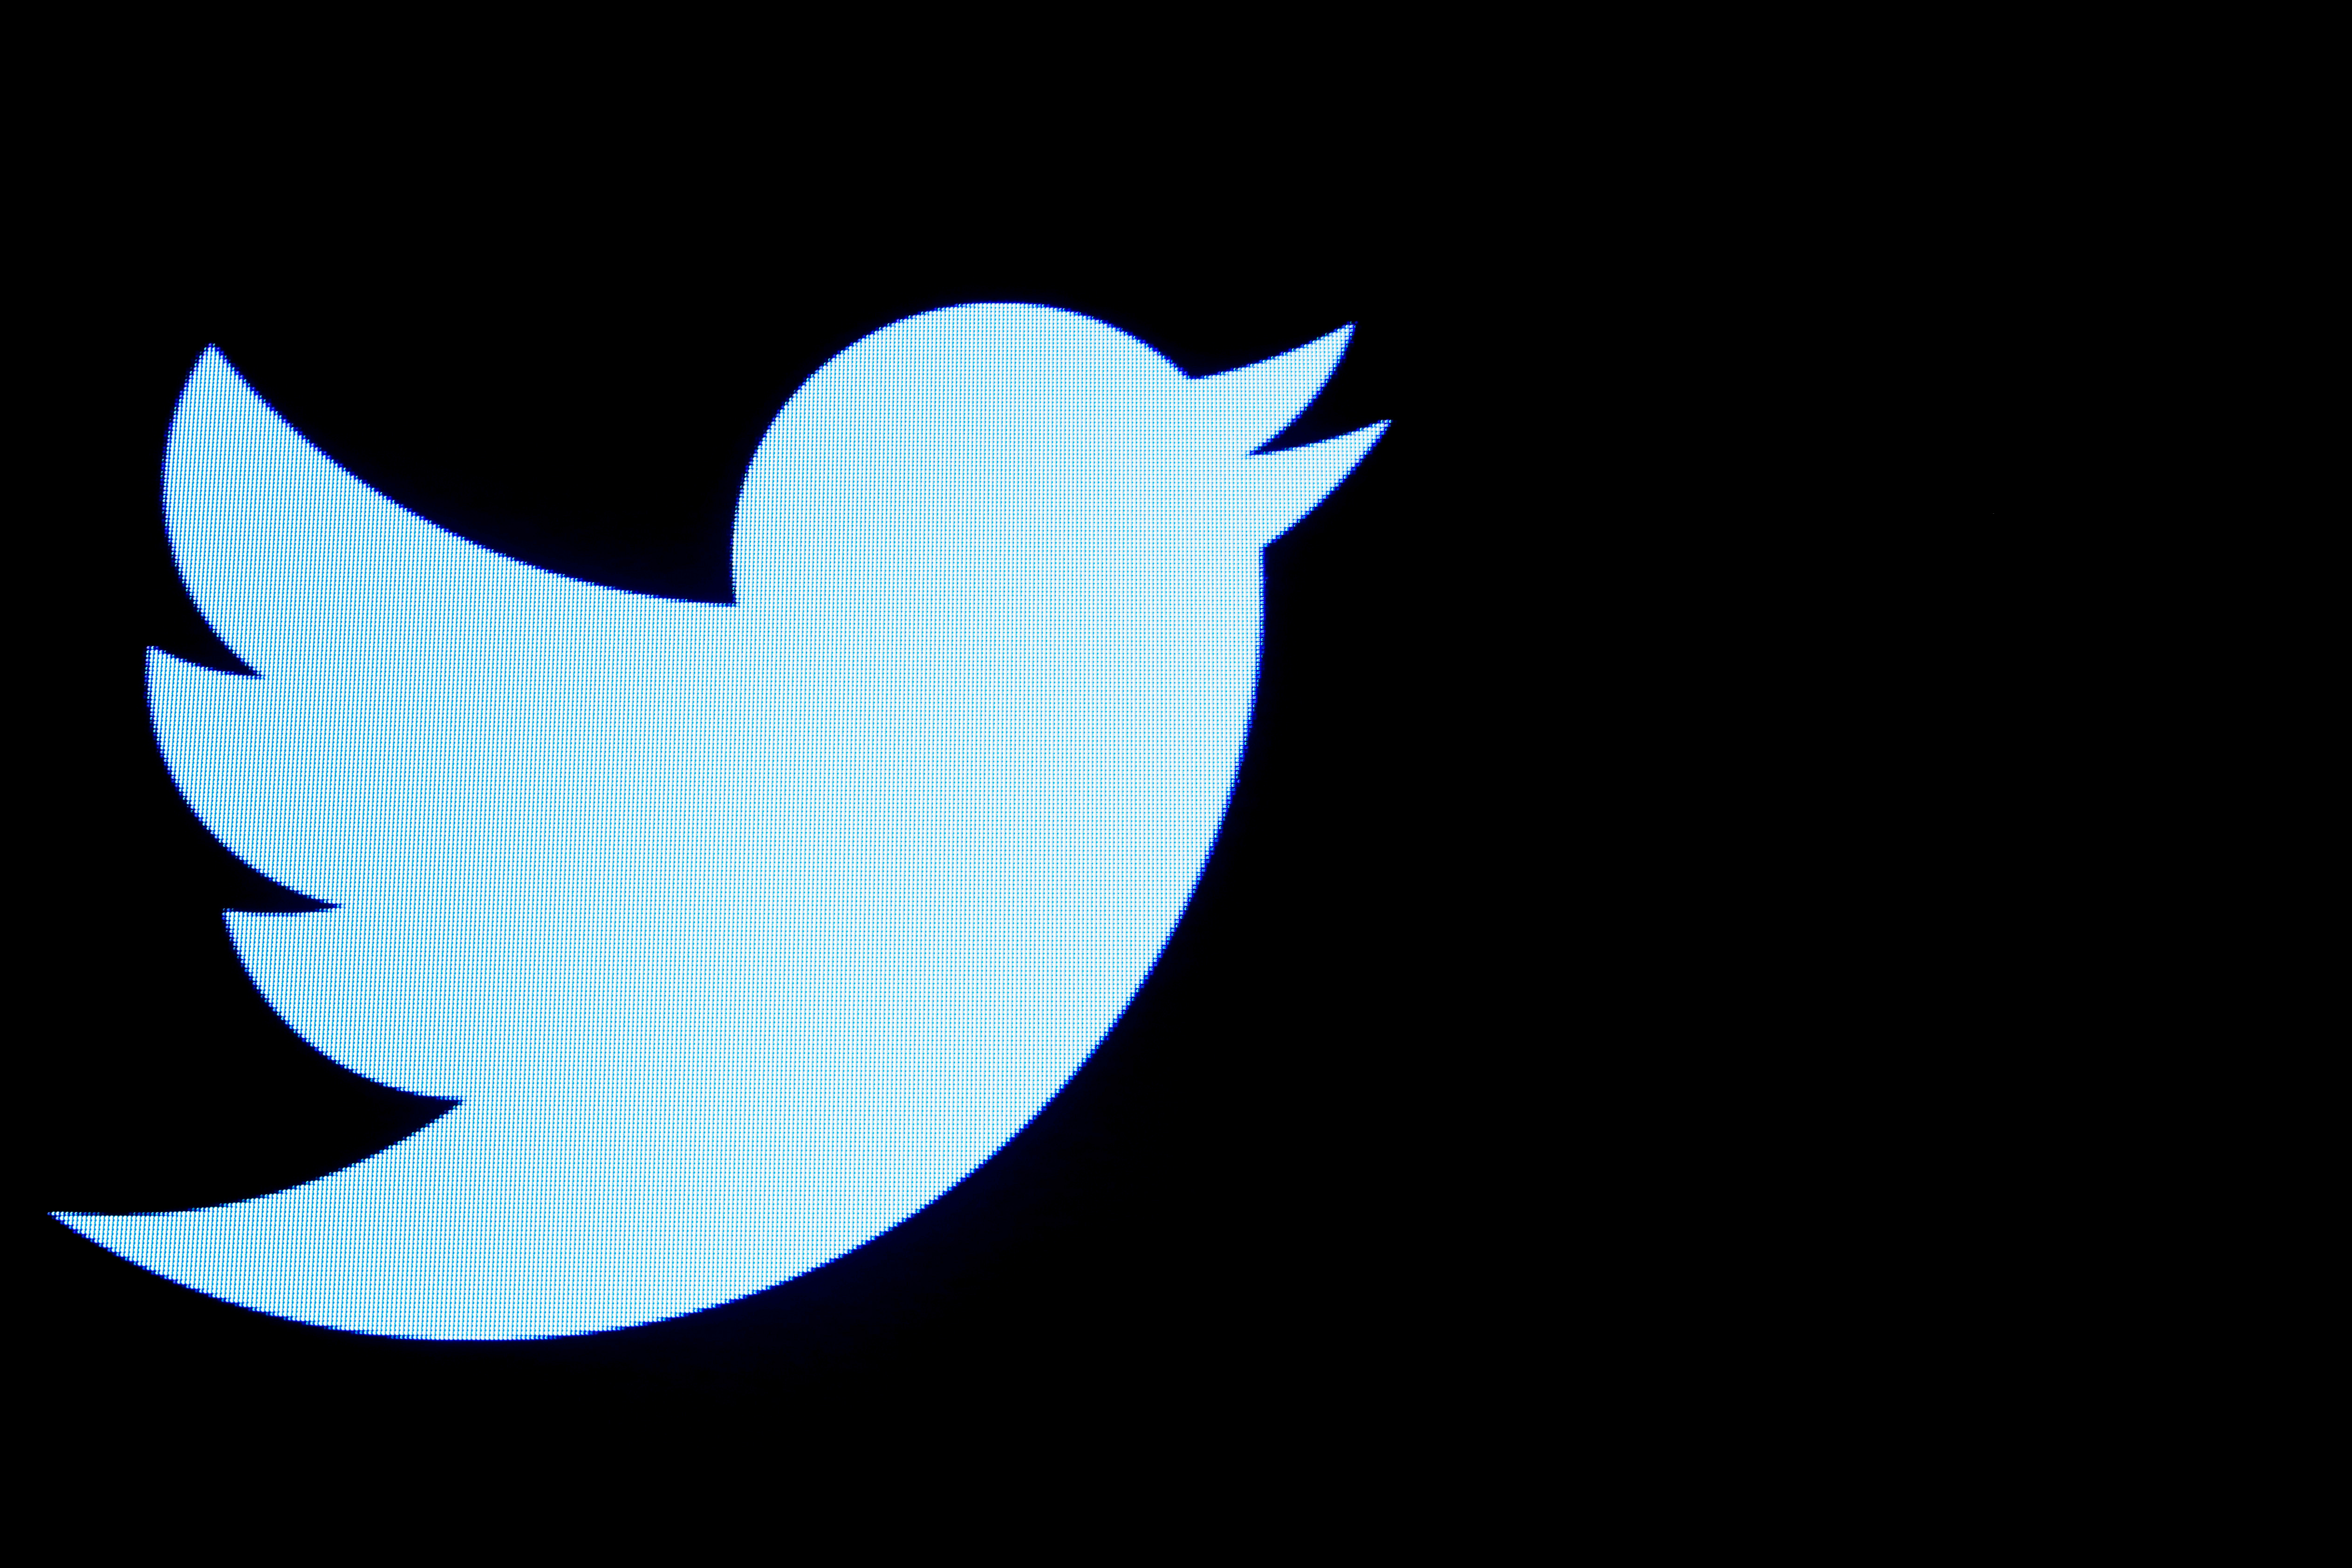 Twitter suspende cuentas venezolanas vinculadas con “campañas de influencia estatal” y “manipulación de plataformas”